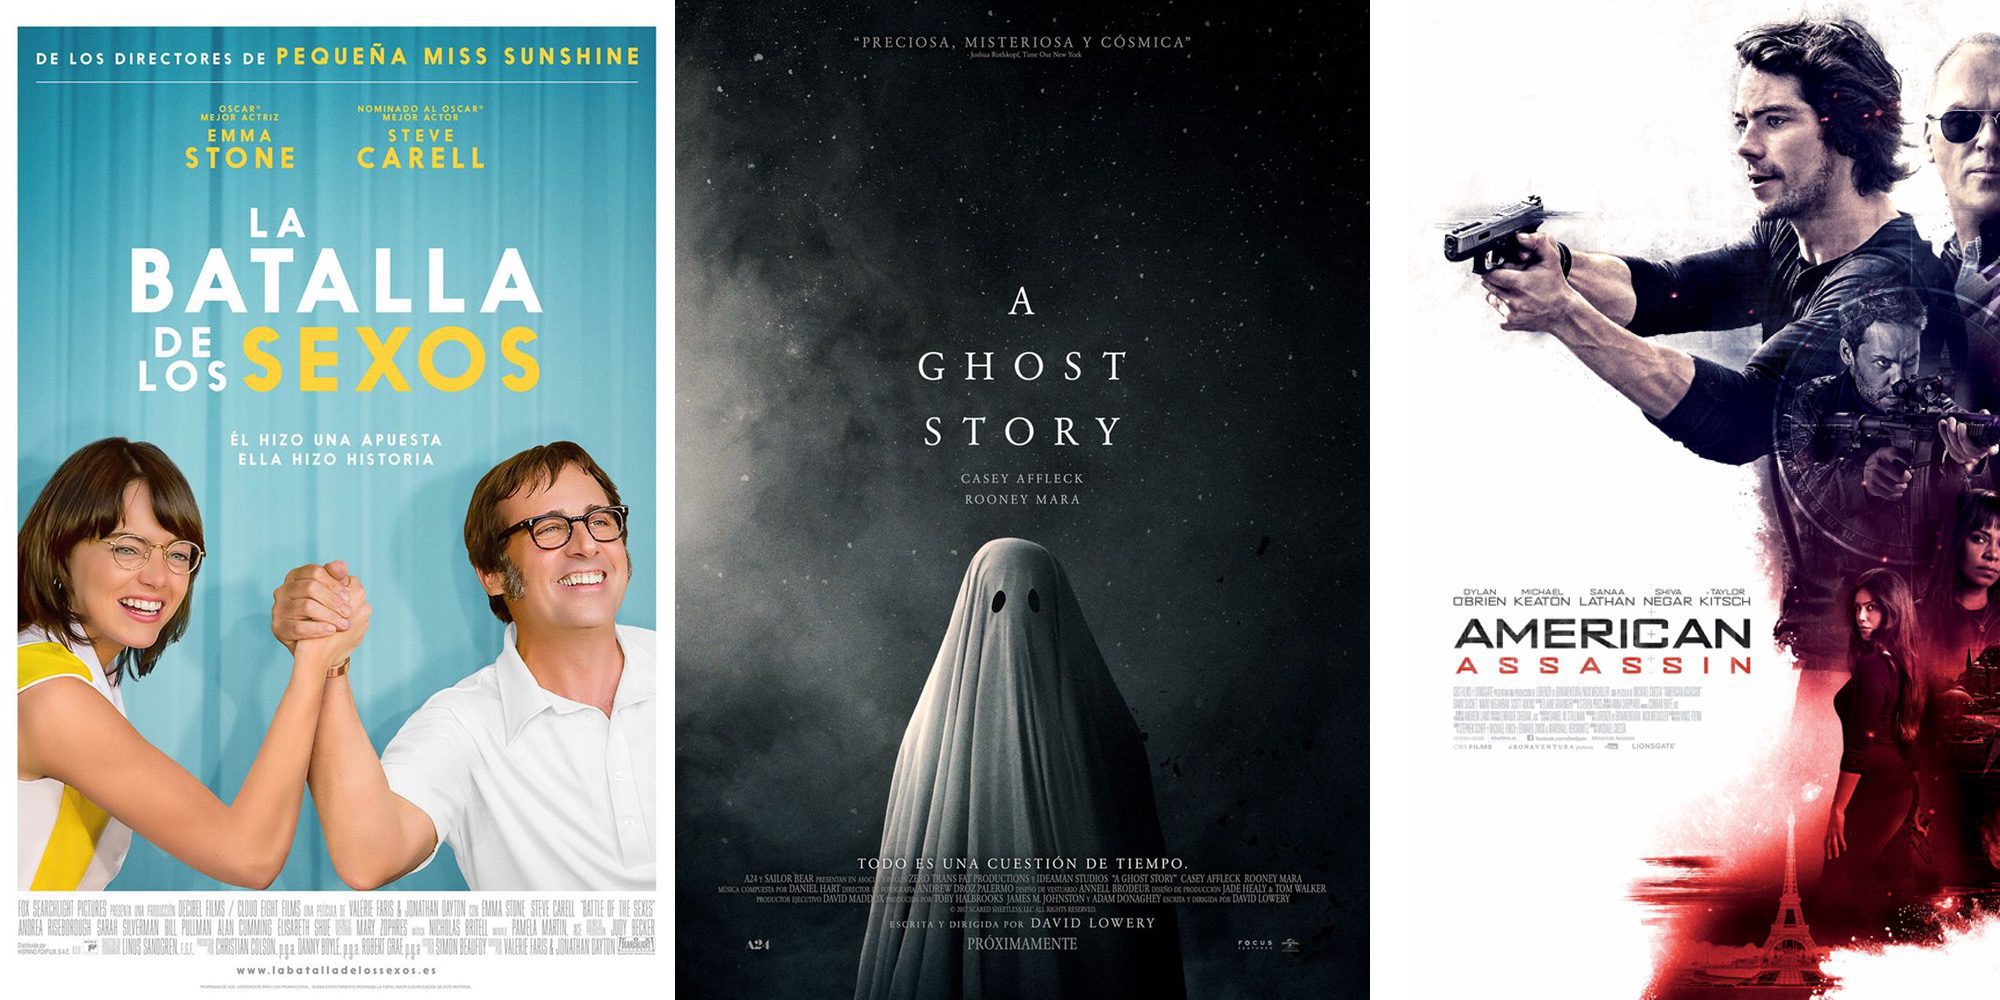 'La batalla de los sexos' y 'A Ghost Story' protagonizan los estrenos de cine de la semana